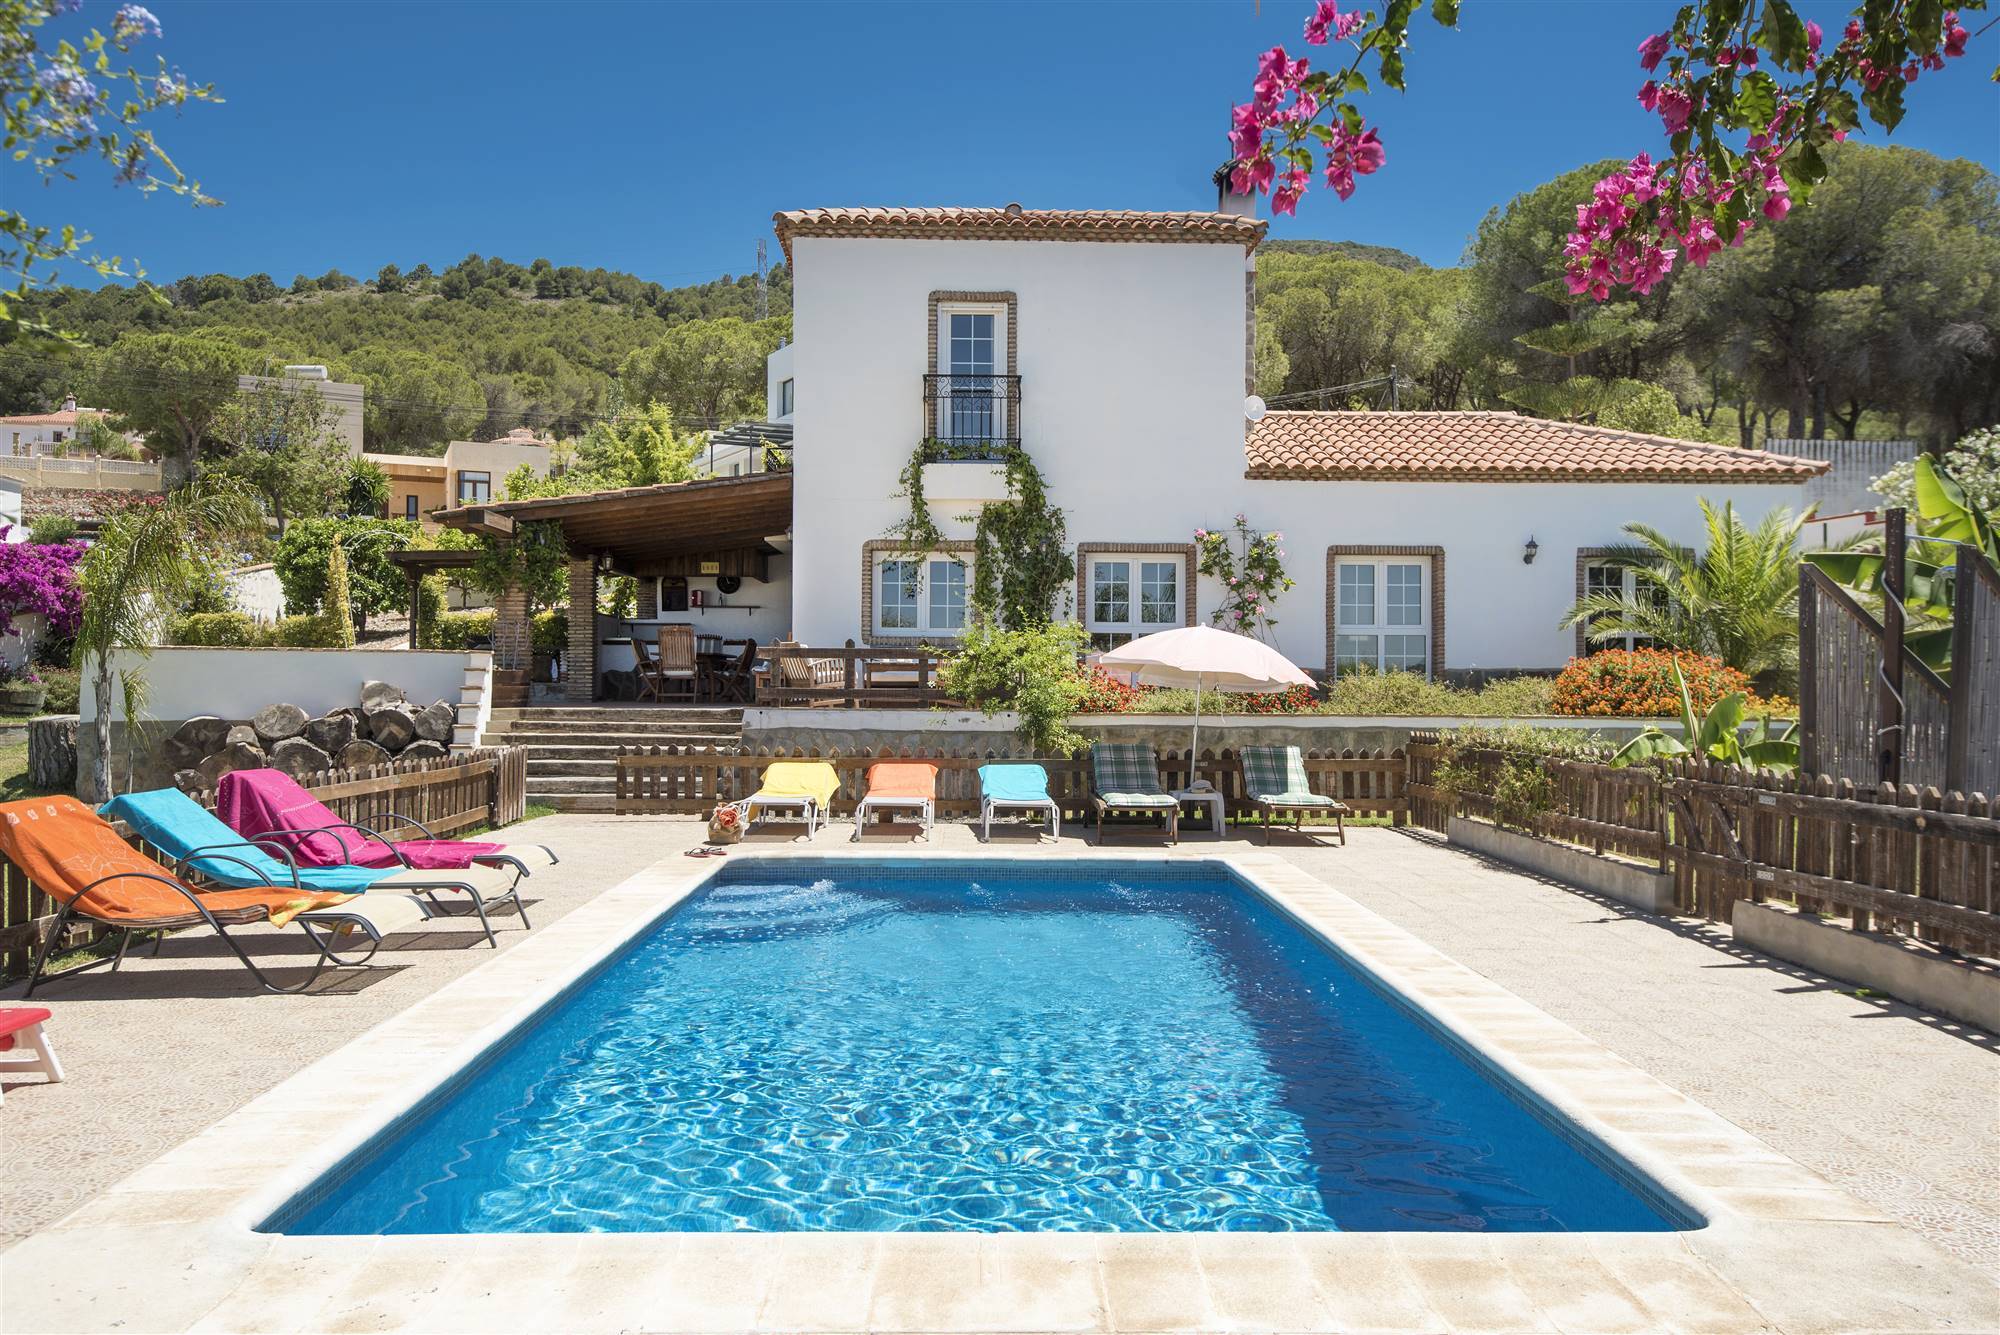 Casa de estilo andaluz con piscina